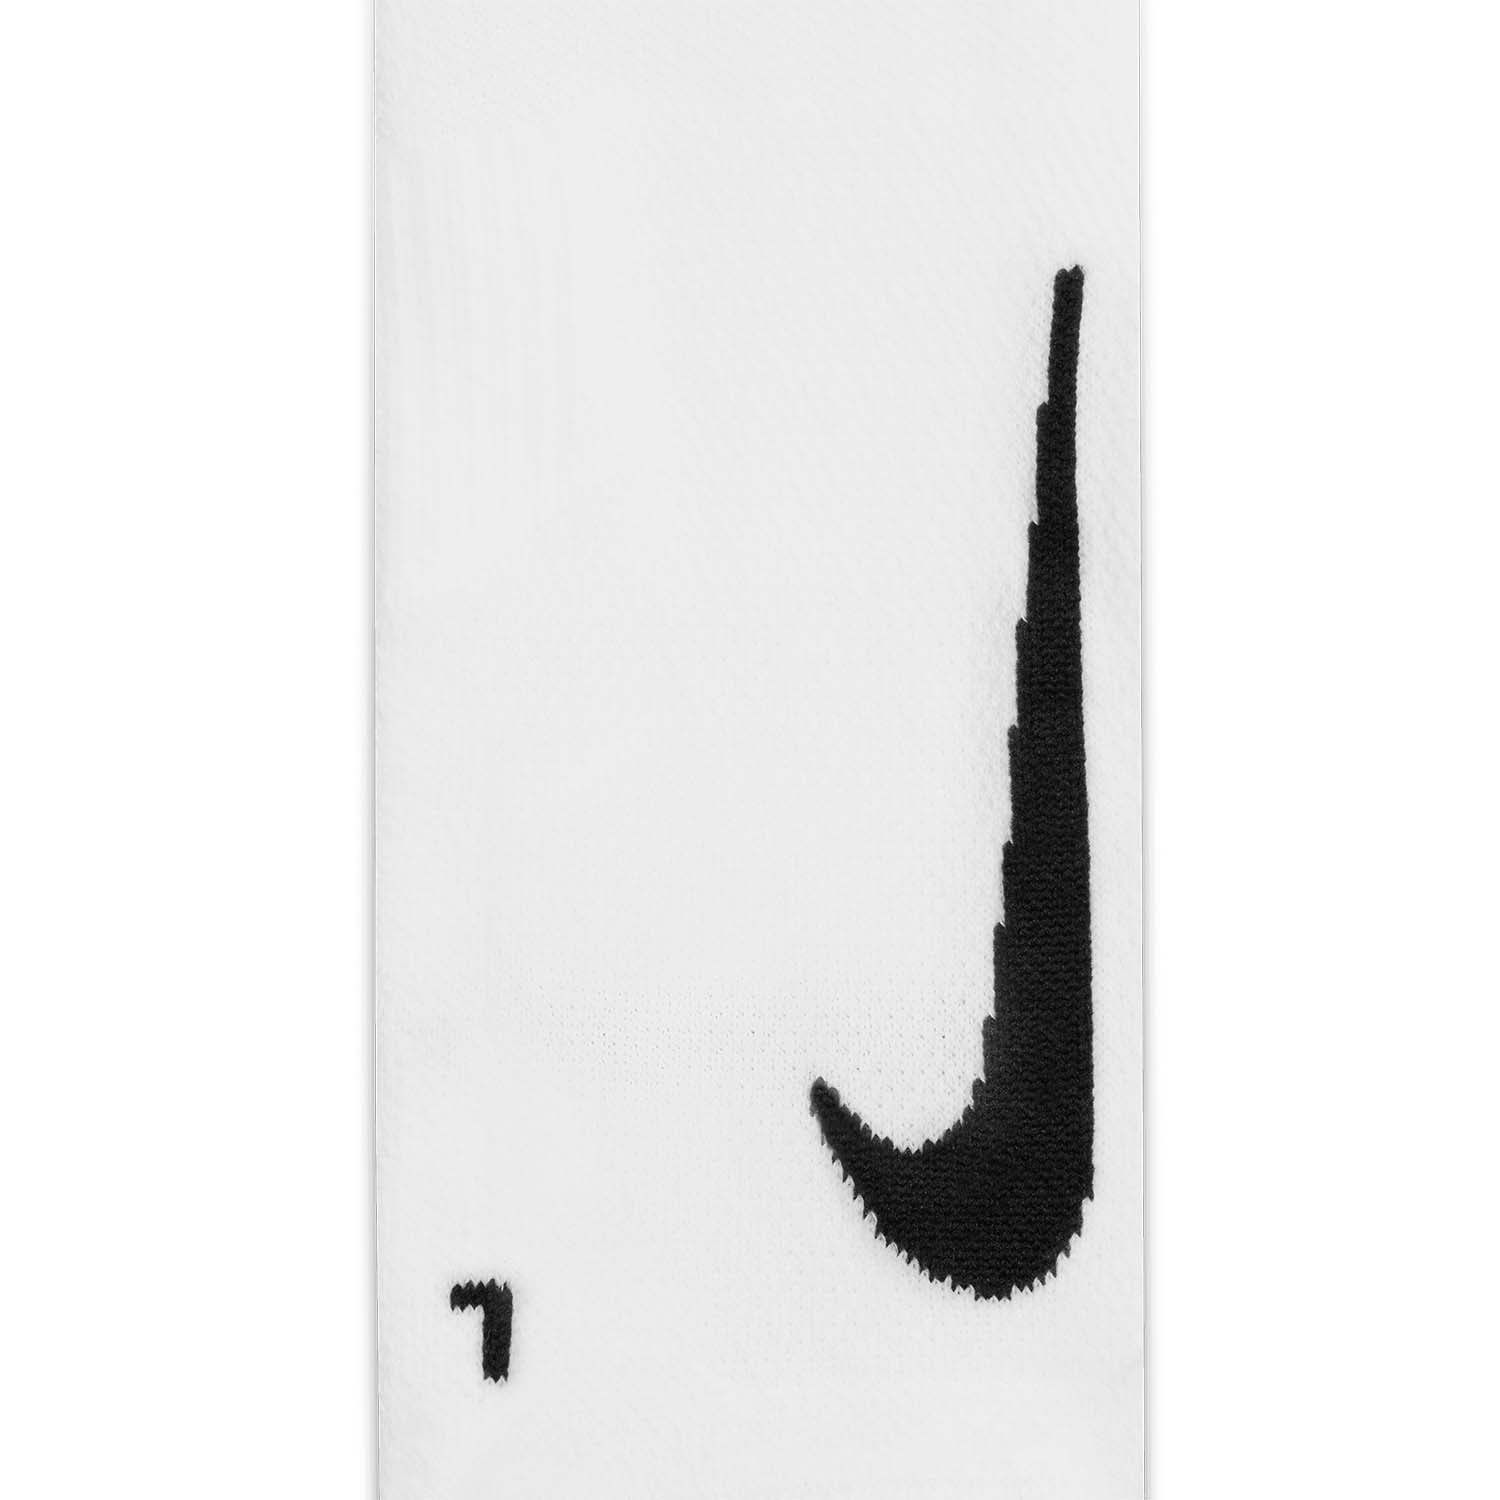 Nike Multiplier Crew x 2 Socks - White/Black